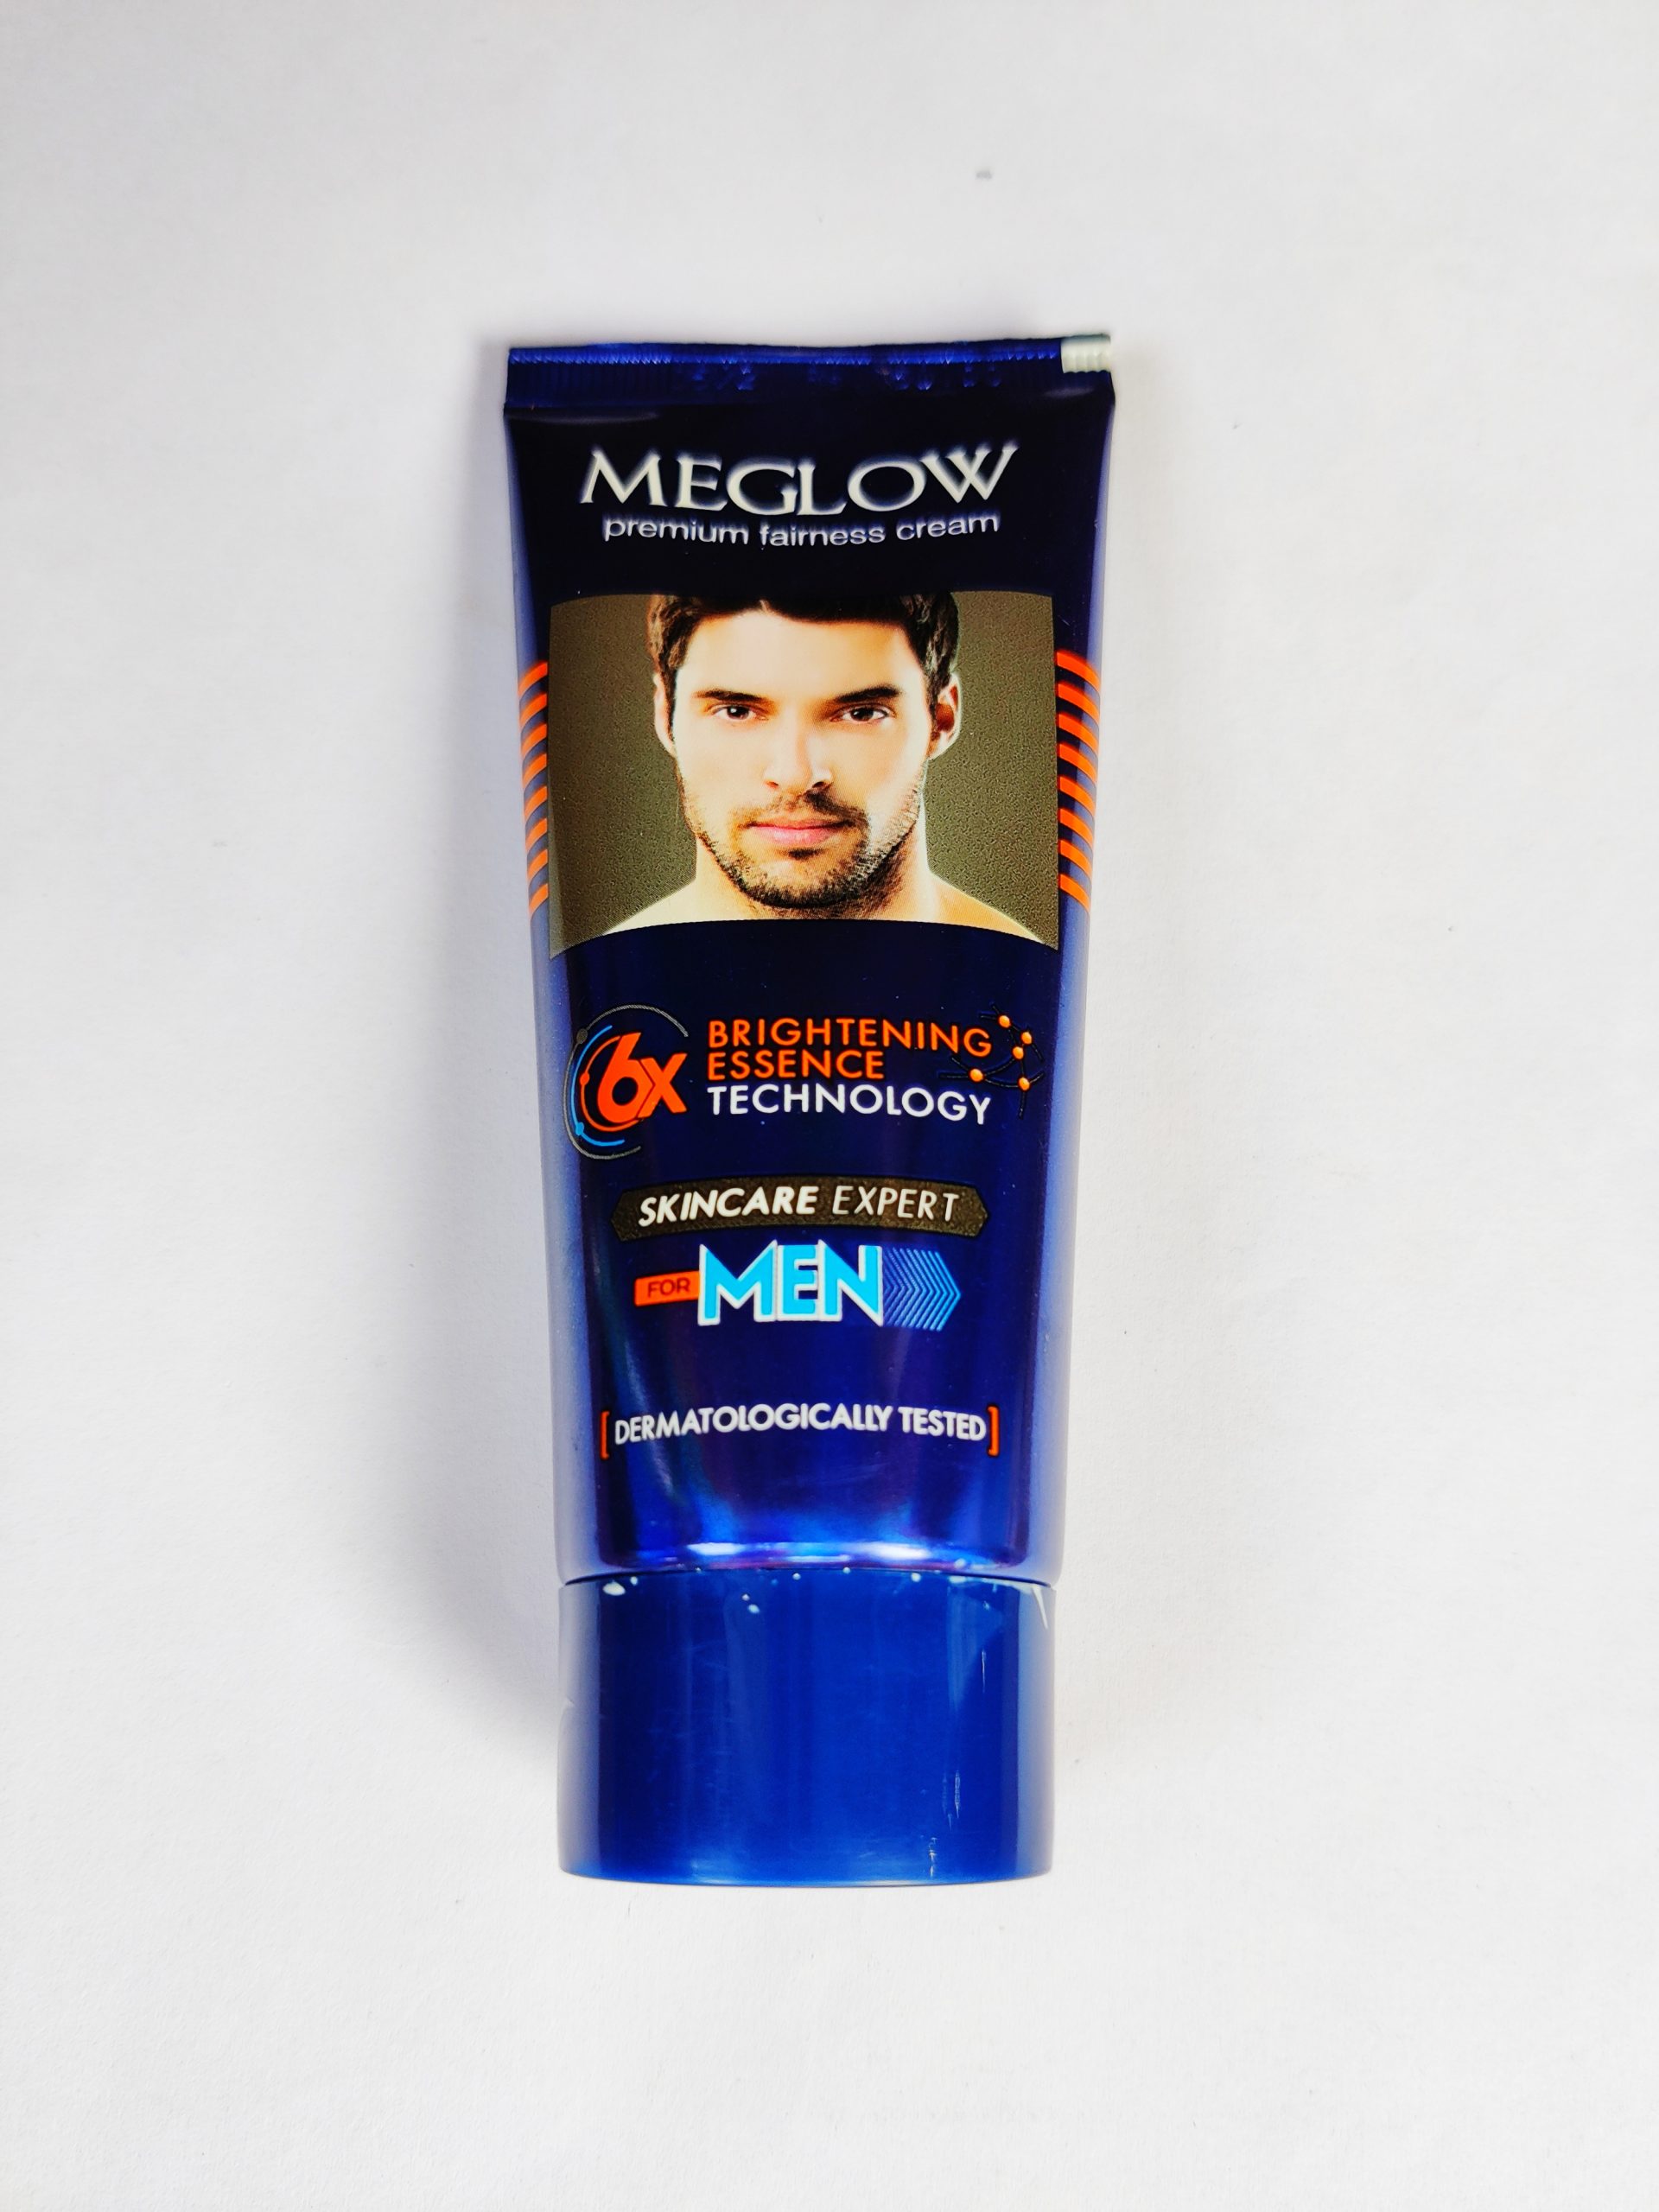 Meglow face cream